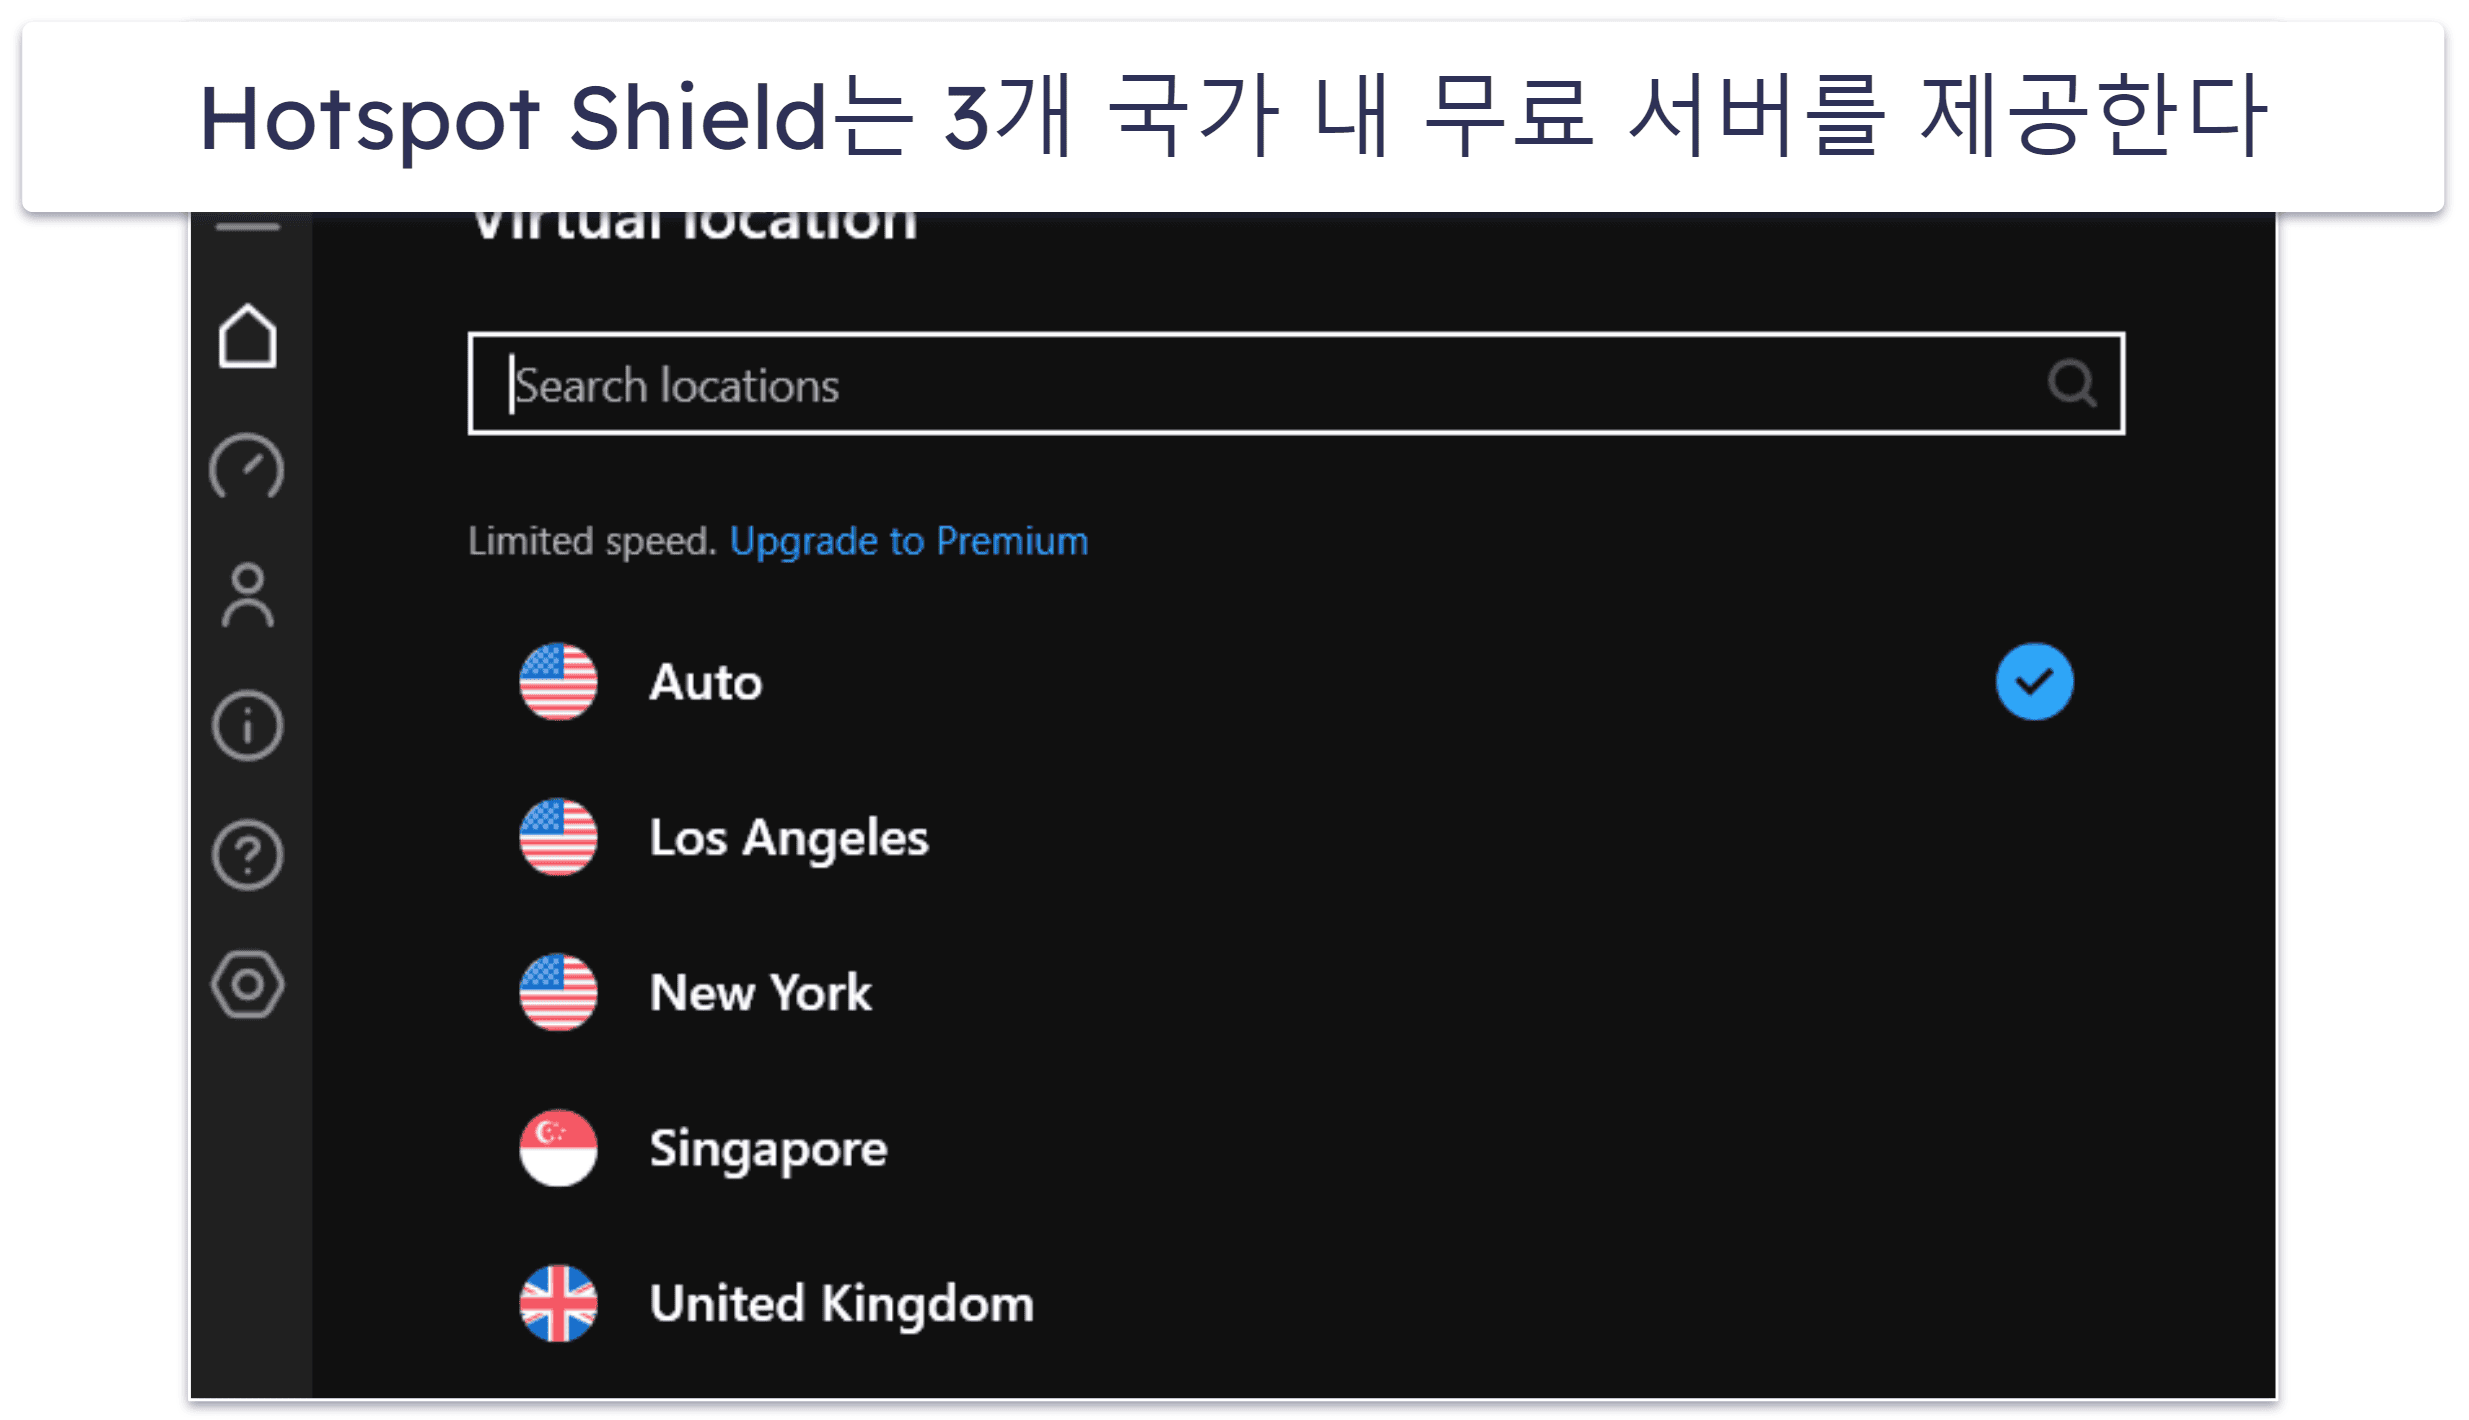 5. Hotspot Shield — 보안 웹 브라우징에 좋은 서비스